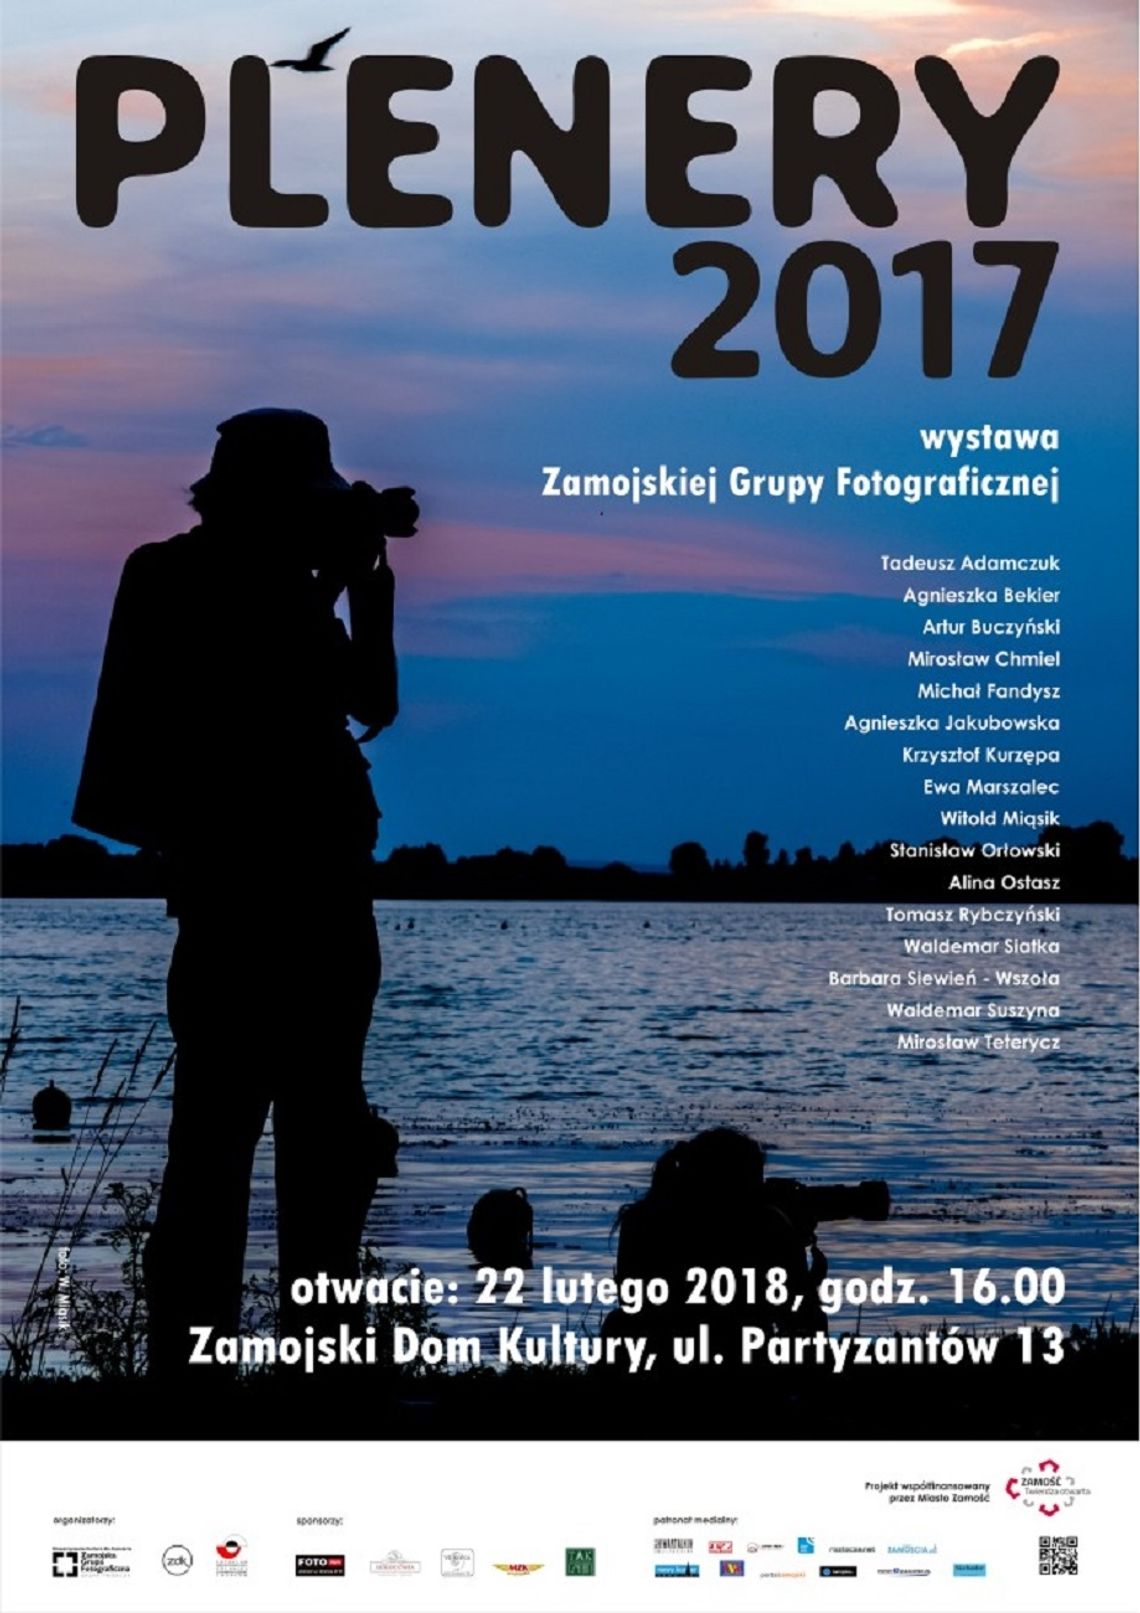 Zamość: Plenery 2017 - wernisaż fotograficznej wystawy w ZDK